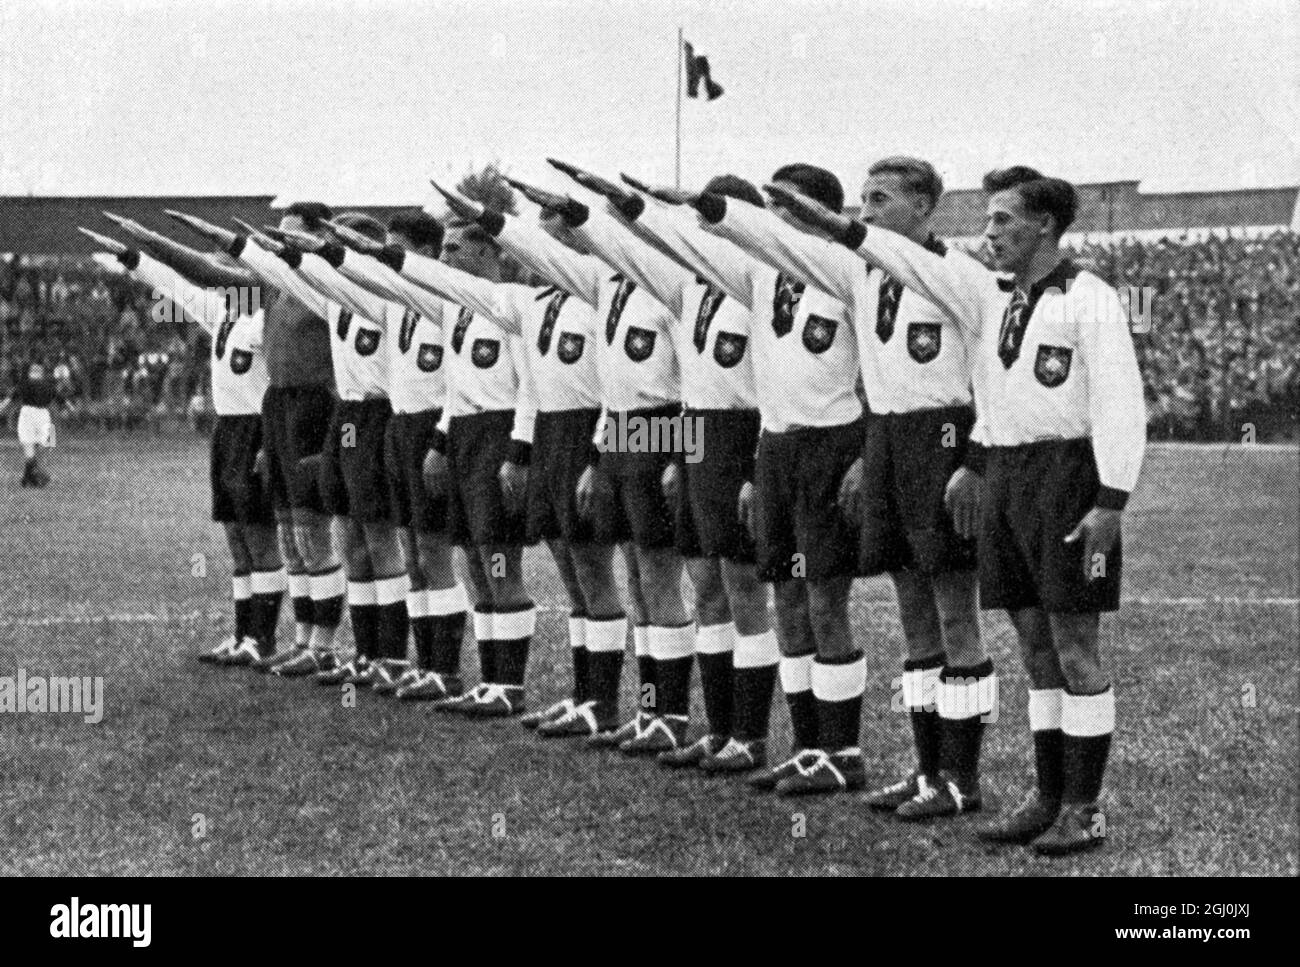 Olimpiadi 1936, Berlino - squadre di calcio da tutto il mondo - Germania Fussballmannschaften aus aller Welt - Deutschland ©TopFoto Foto Stock